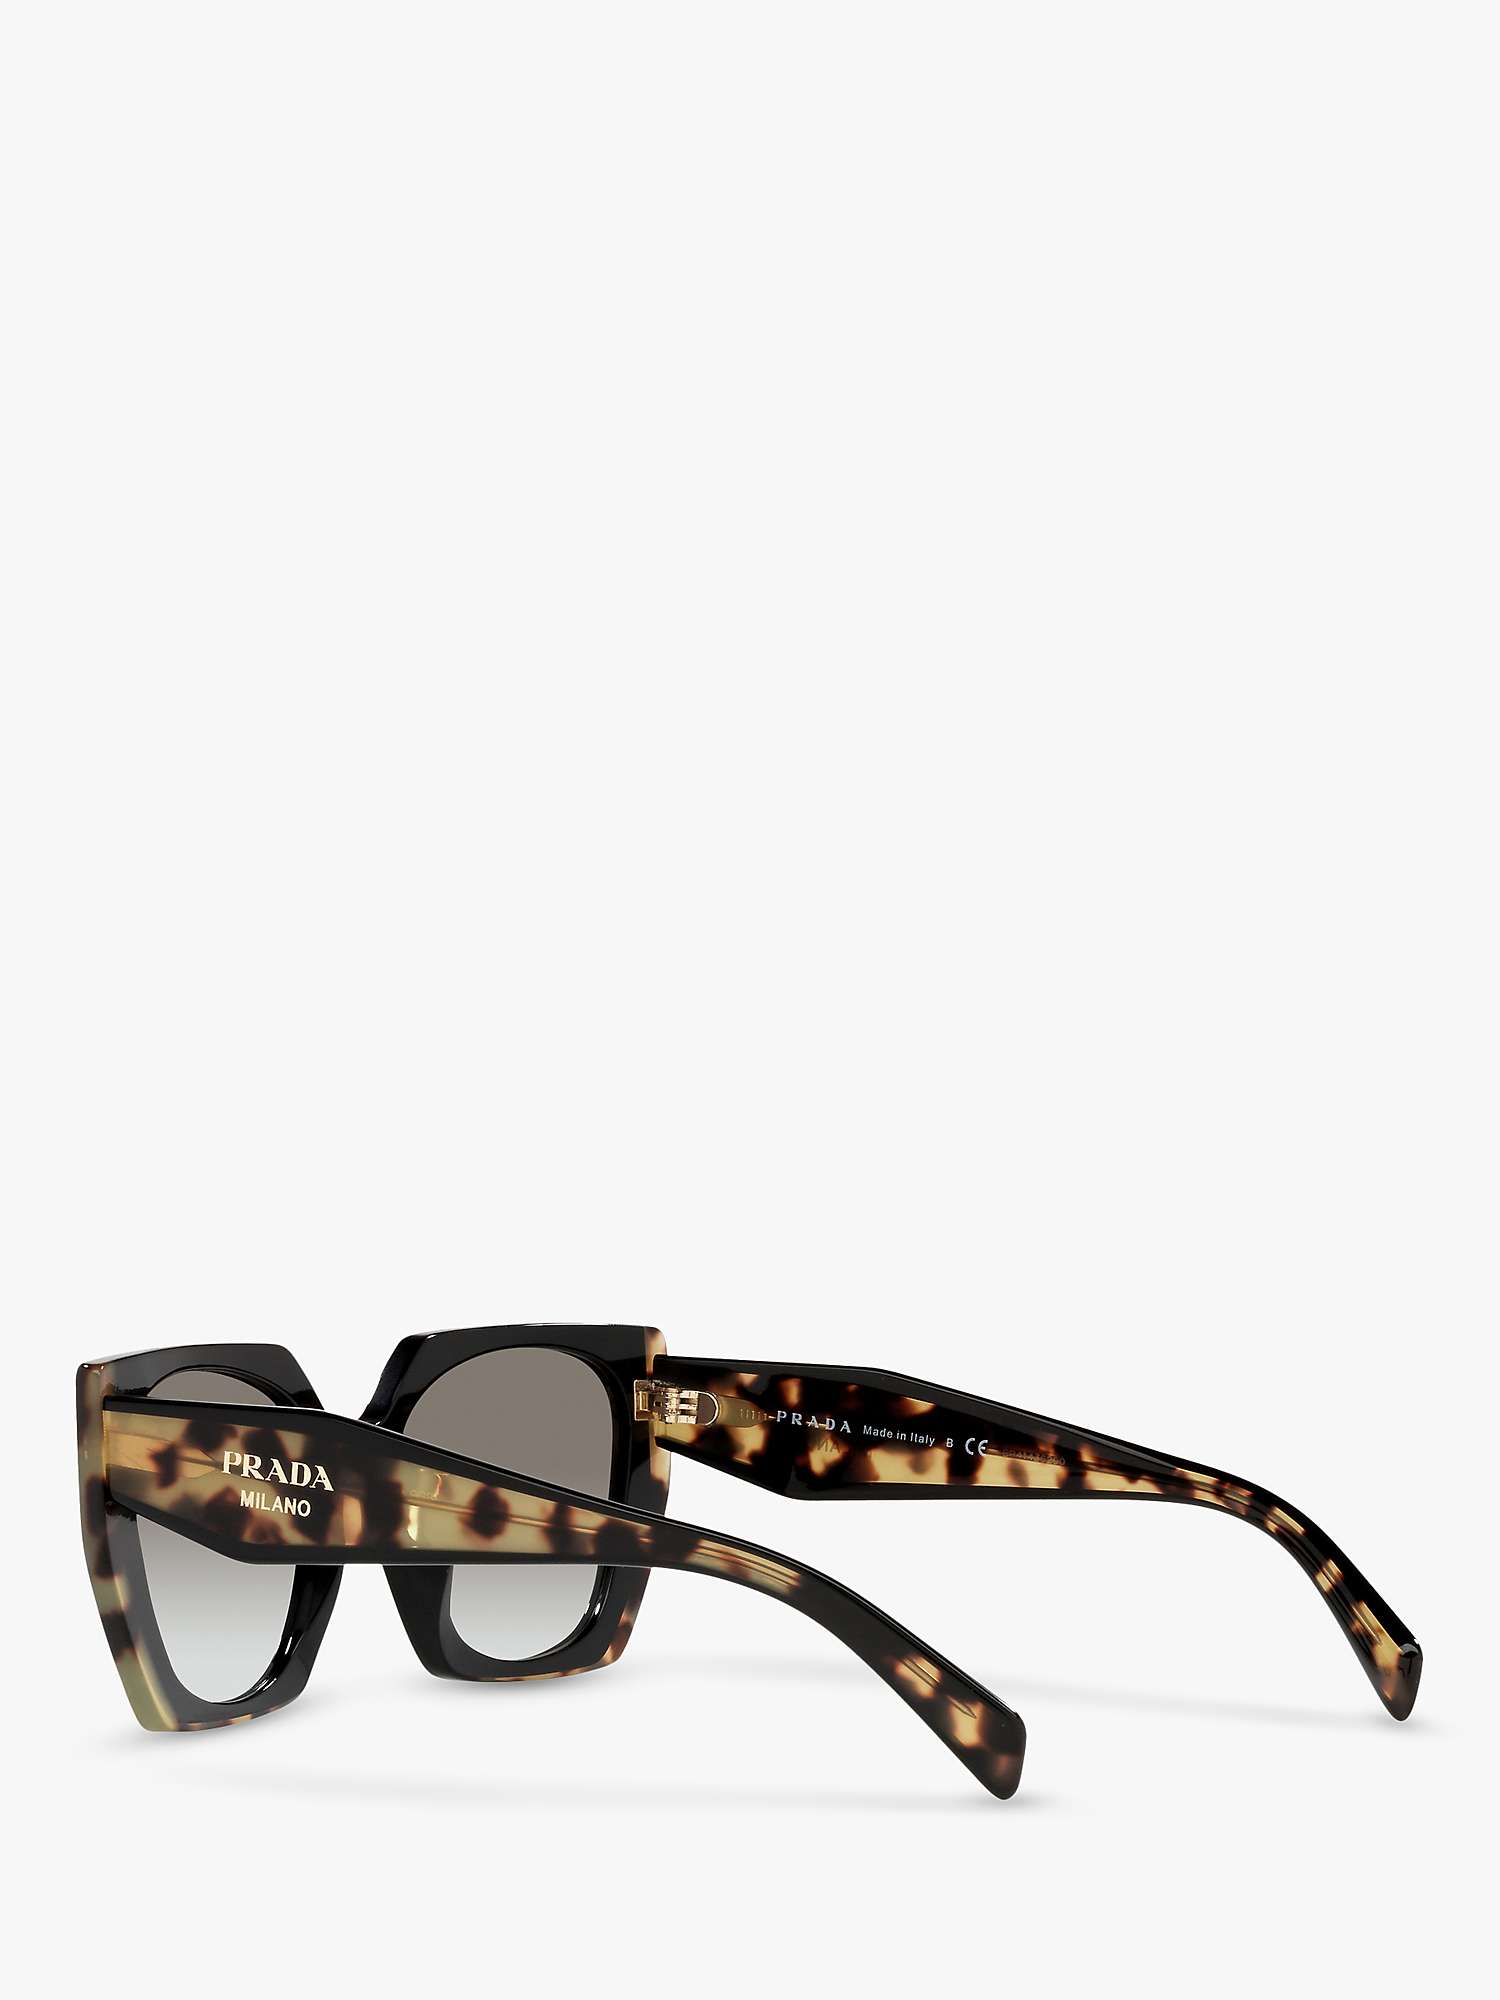 Buy Prada PR 15WS Women's Rectangular Chunky Frame Sunglasses, Tortoise/Black Gradient Online at johnlewis.com